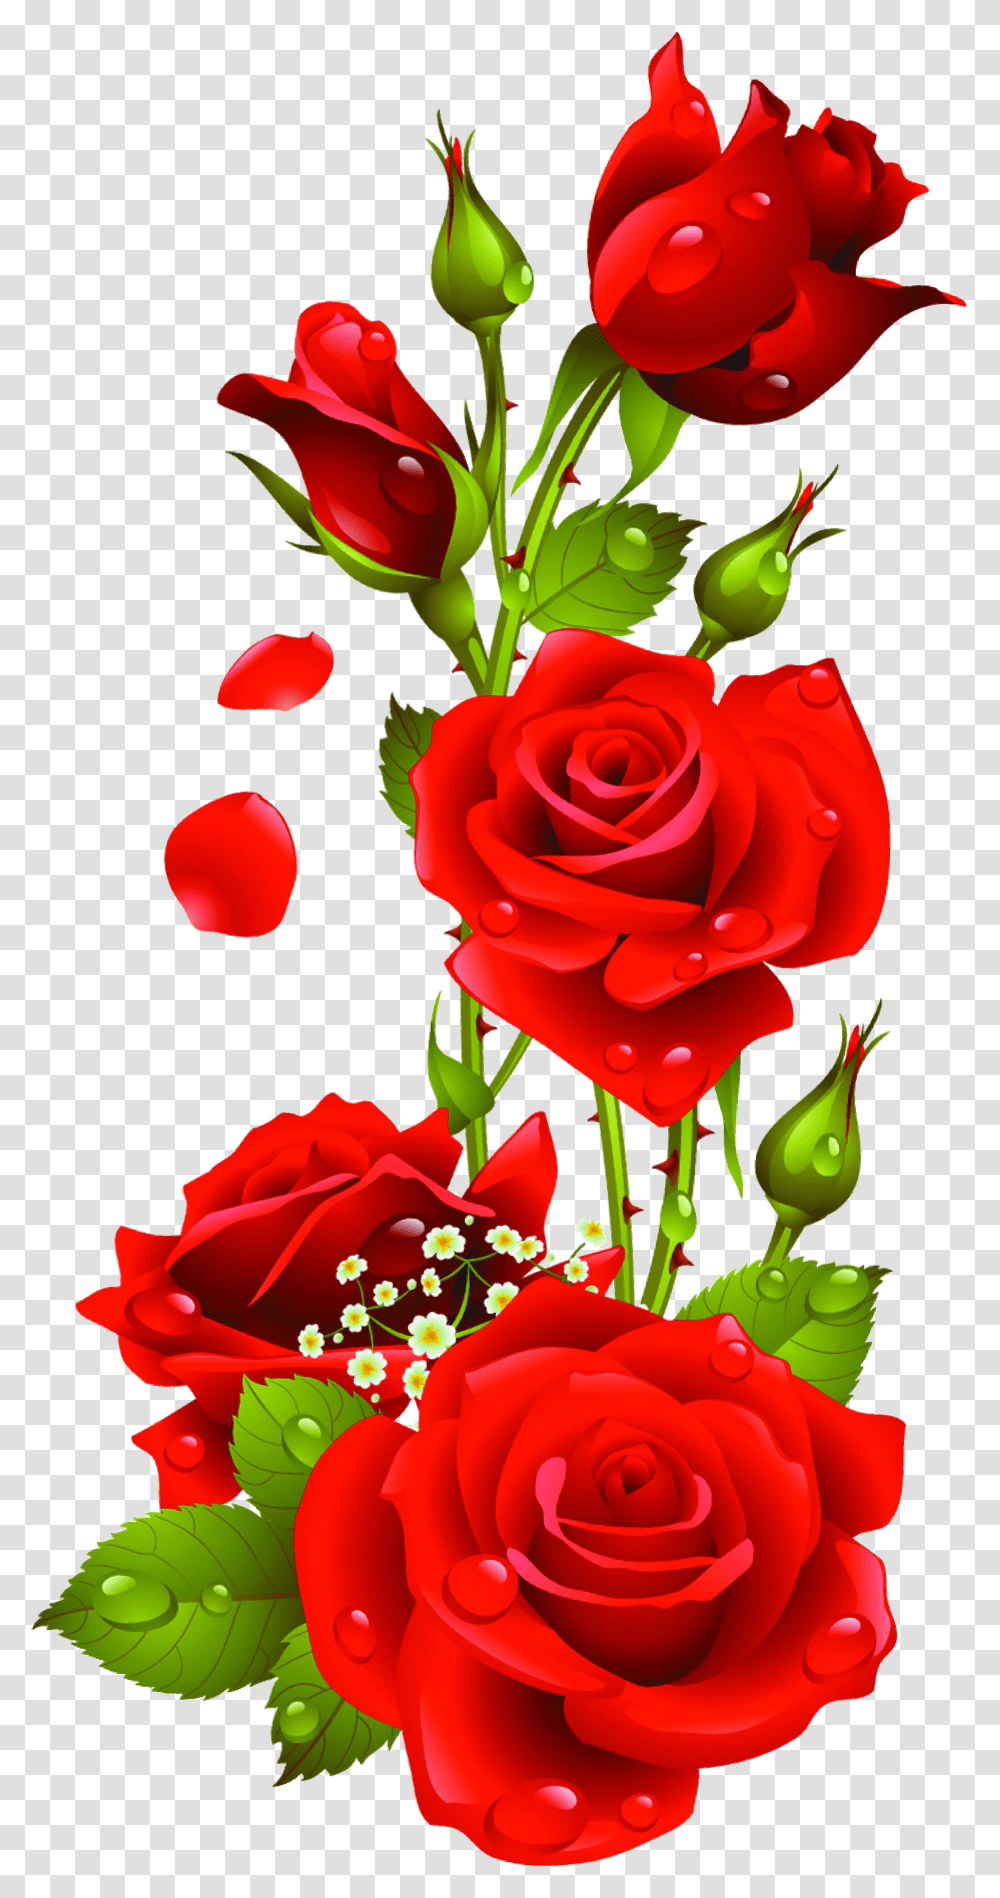 Rose Flower Images Download Transparent Png